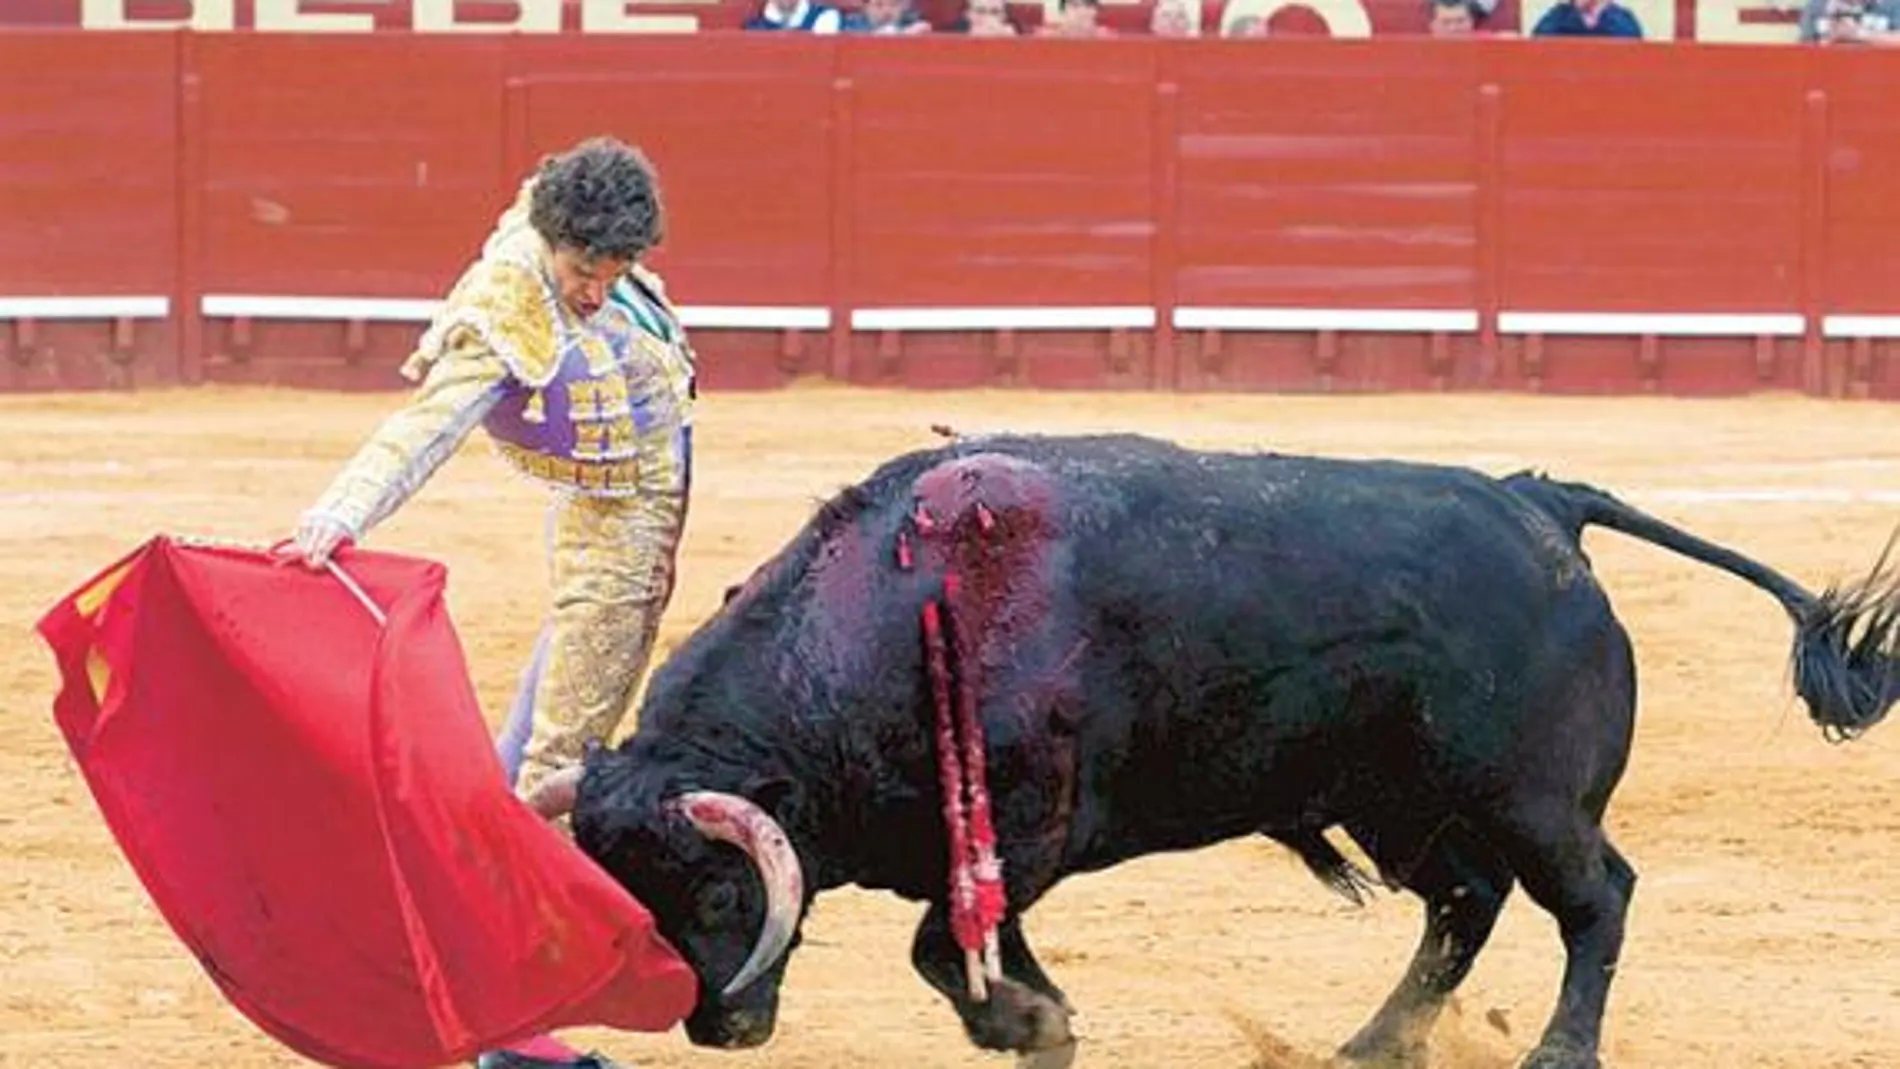 José Tomás torea sobre la mano derecha a su primer toro, ayer en Jerez